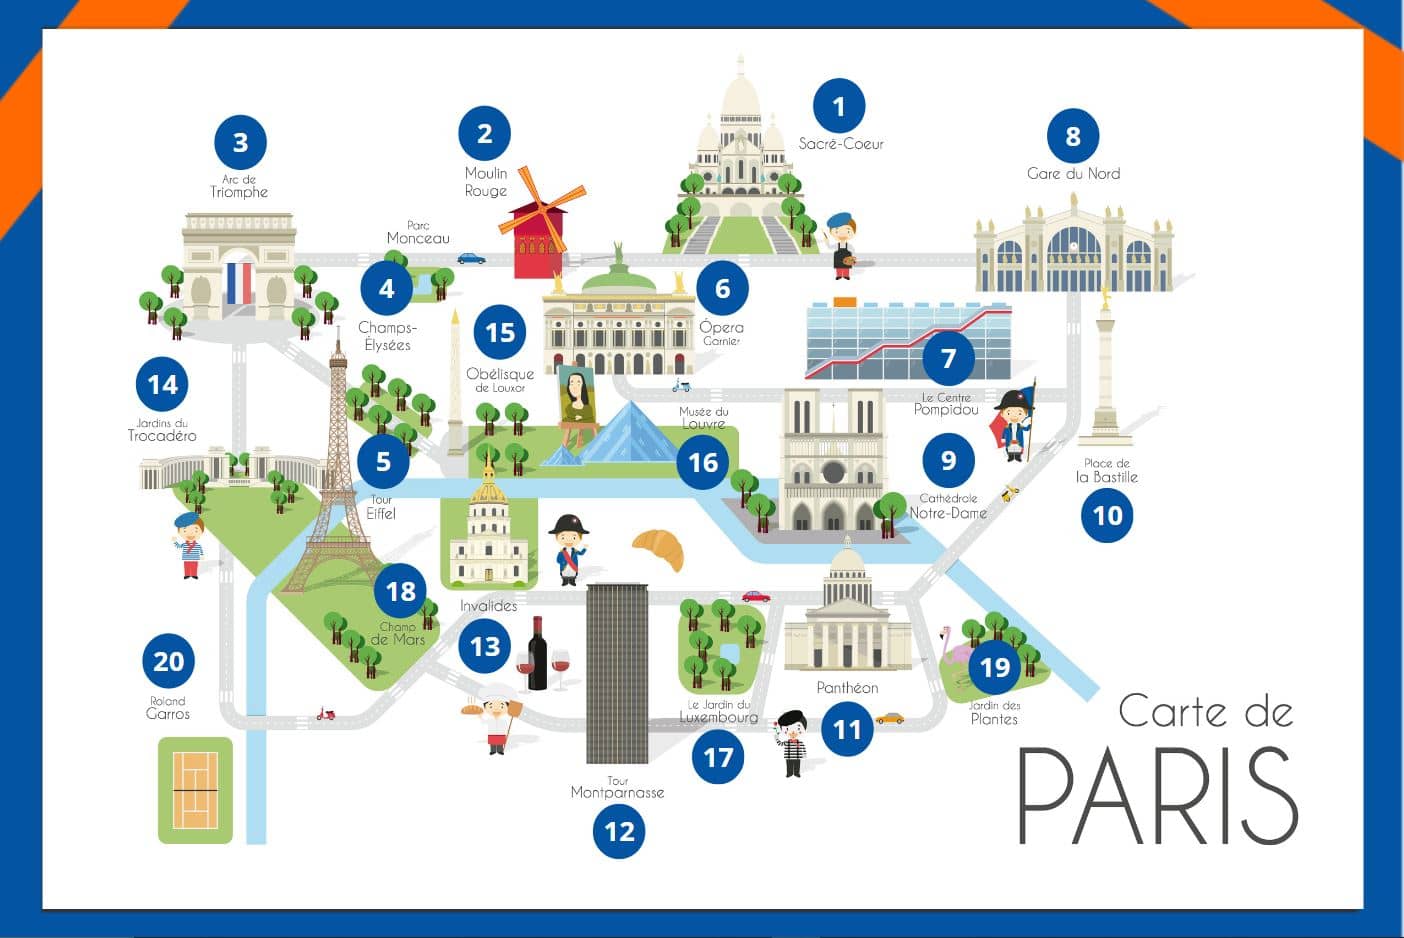 Carte des monuments parisiens disponible dans le metaverse